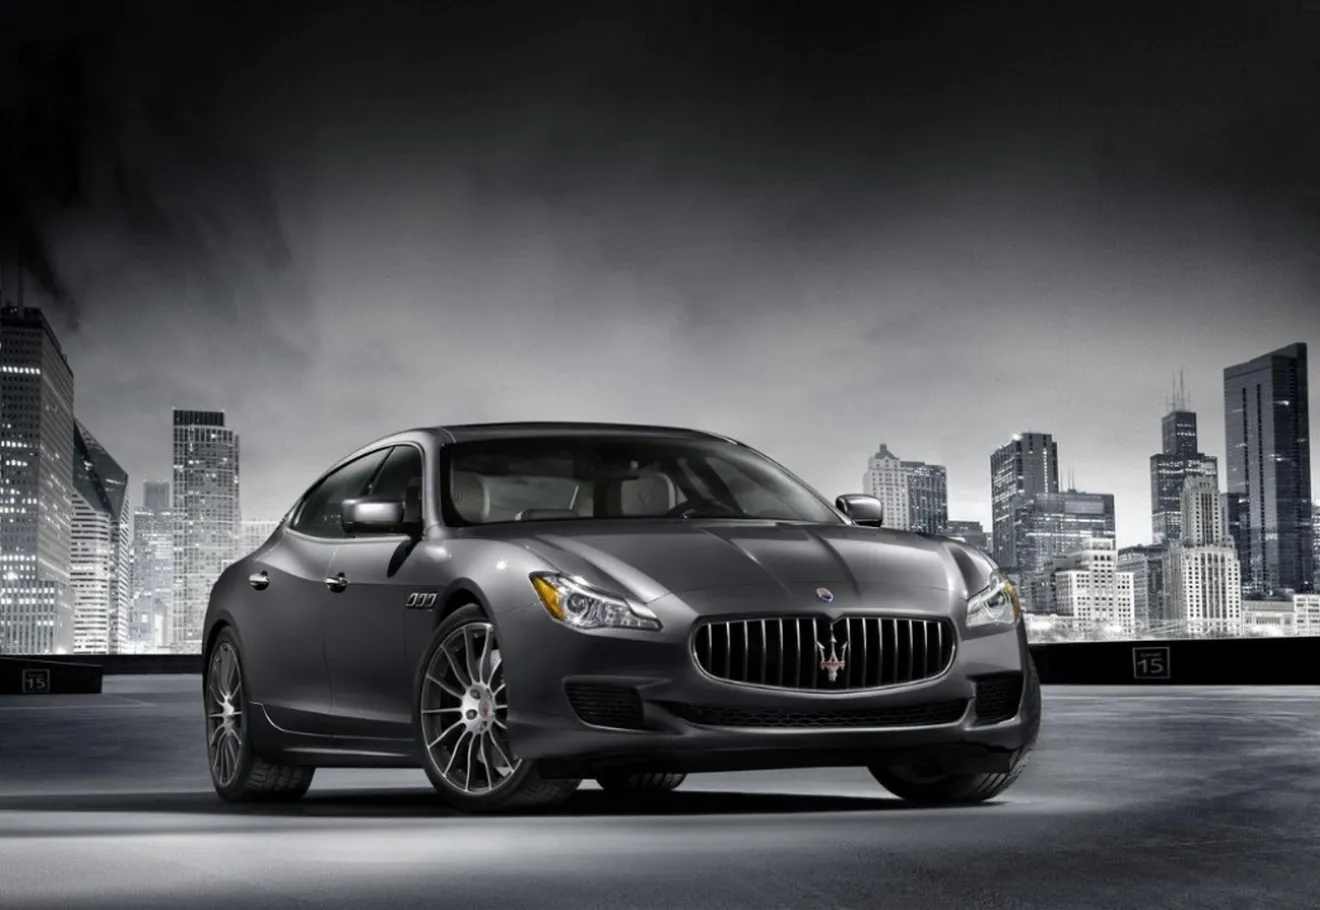 2015 Maserati Ghibli y Quattoporte, ligeras actualizaciones para el Salón de Los Ángeles